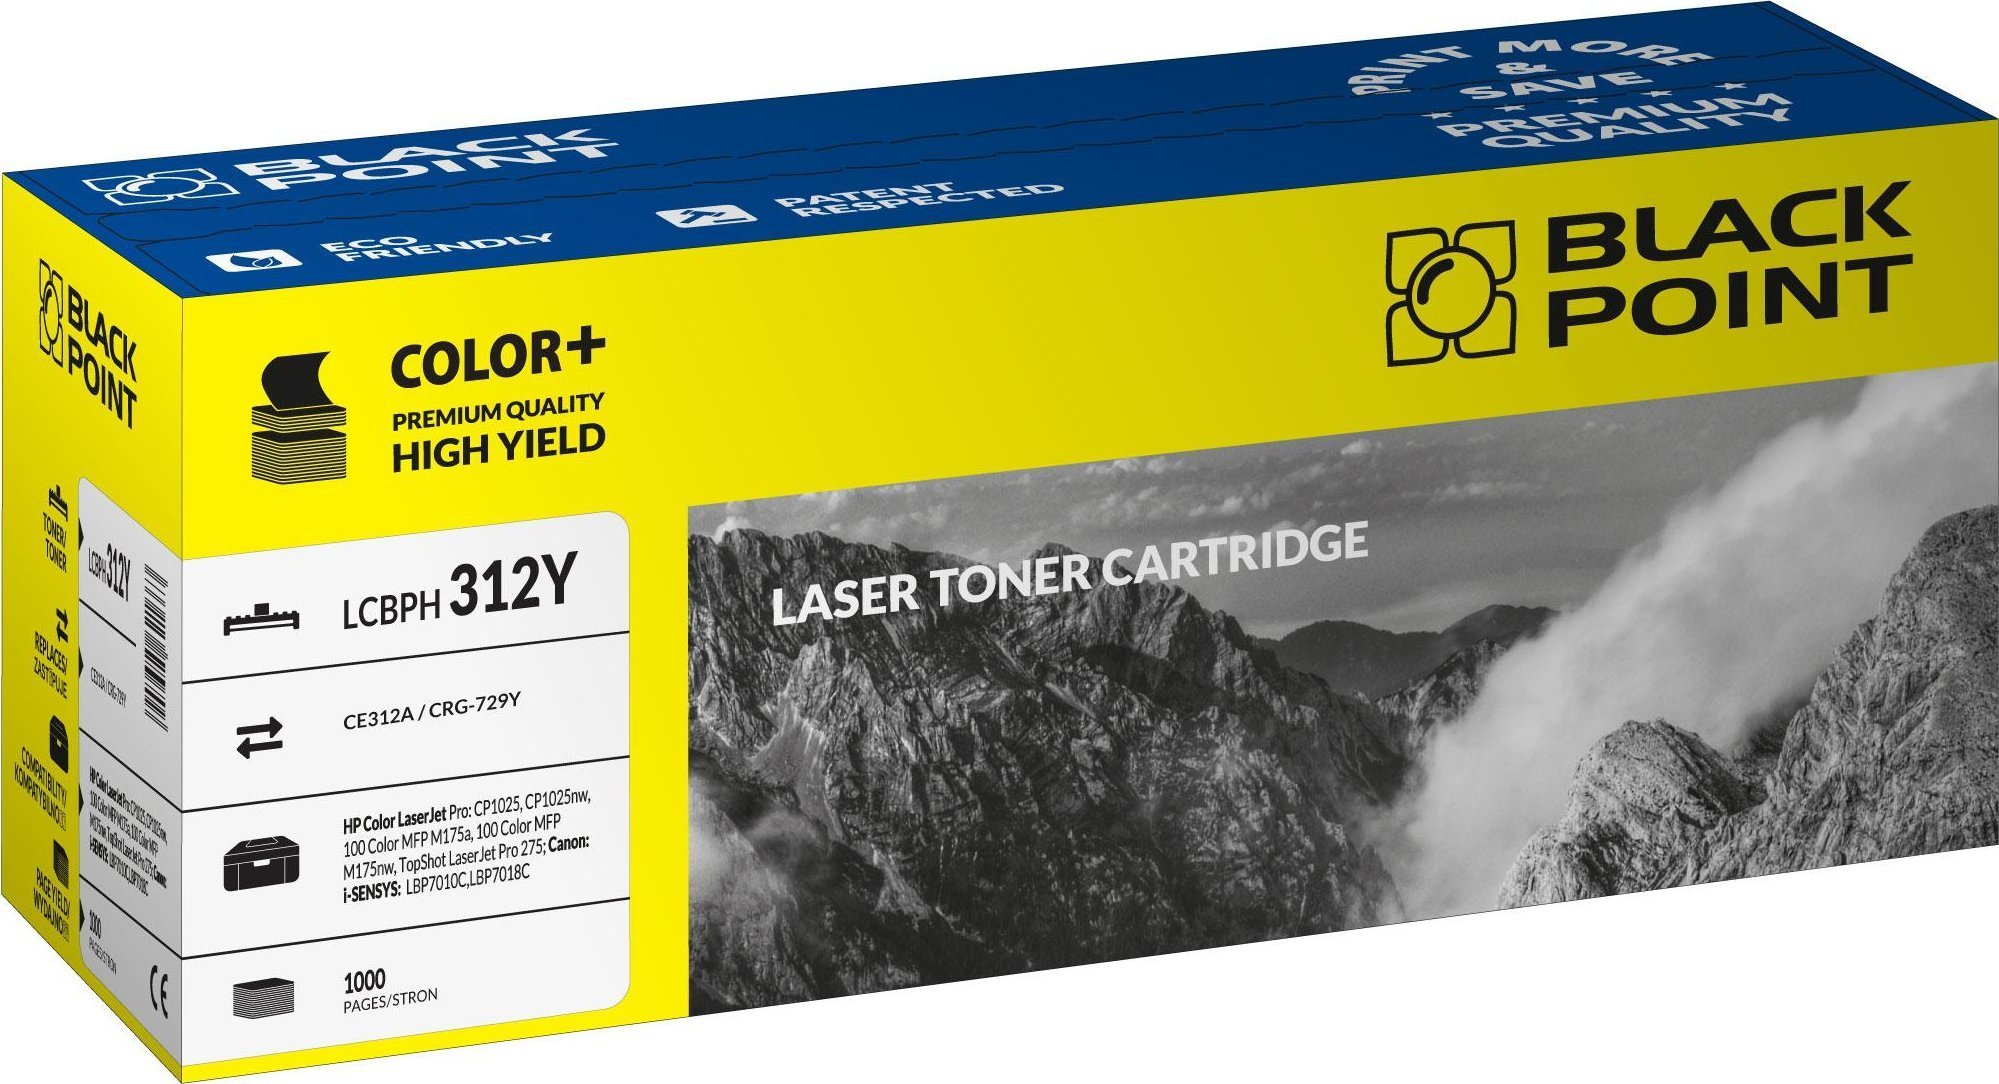 Toner Galben, Black Point, Toner, Pentru HP Color LaserJet Pro CP1025 HP Color LaserJet Pro CP1025nw HP Color LaserJet Pro 100 M175a HP Color LaserJet Pro 100 M175nw, 1000 pagini